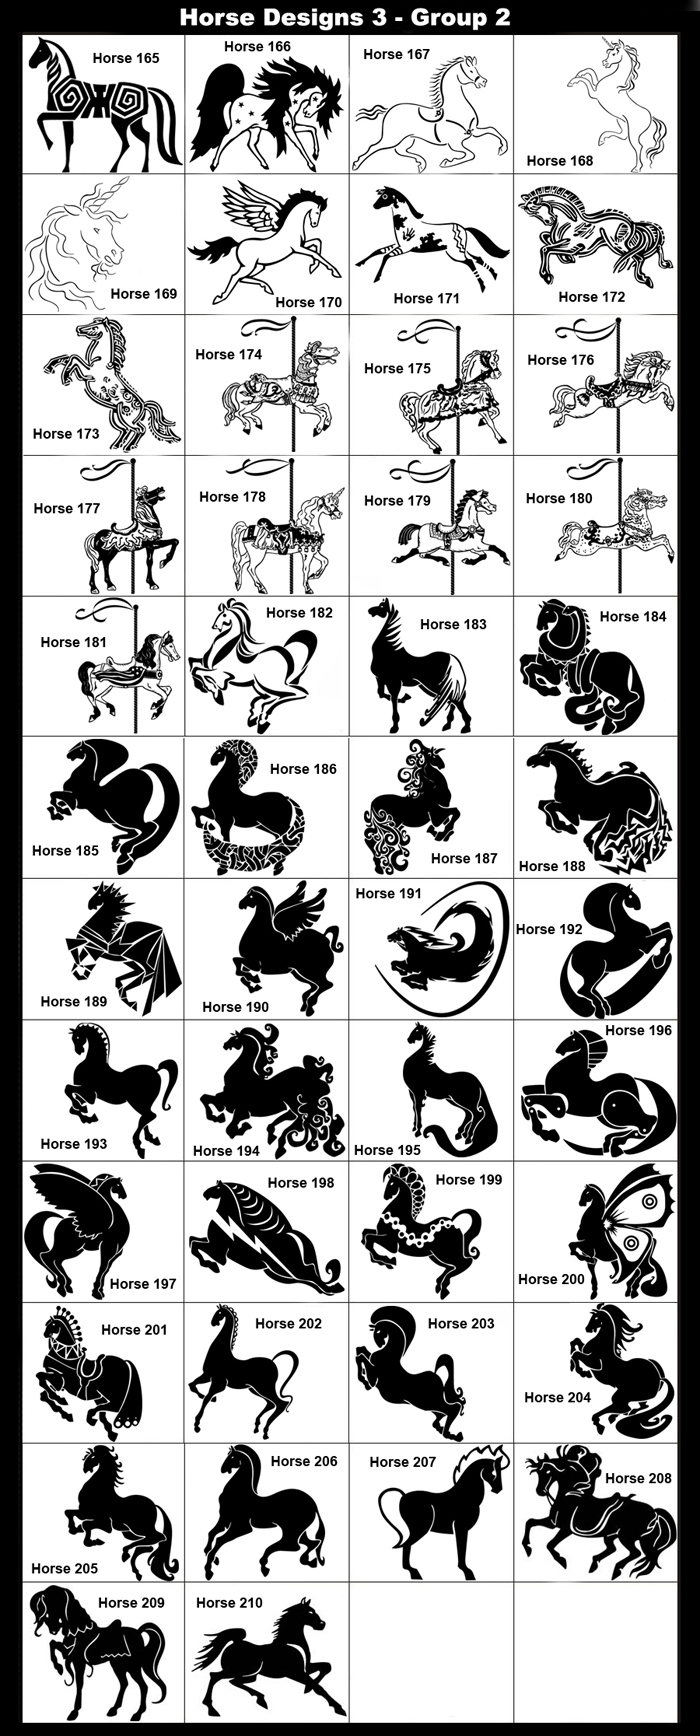 Decorative Horses, Whimsical Horses, Indian Horses, Spiritual Horses, Carousal Horses, Unicorn, Flying Horse, Rearing Horse